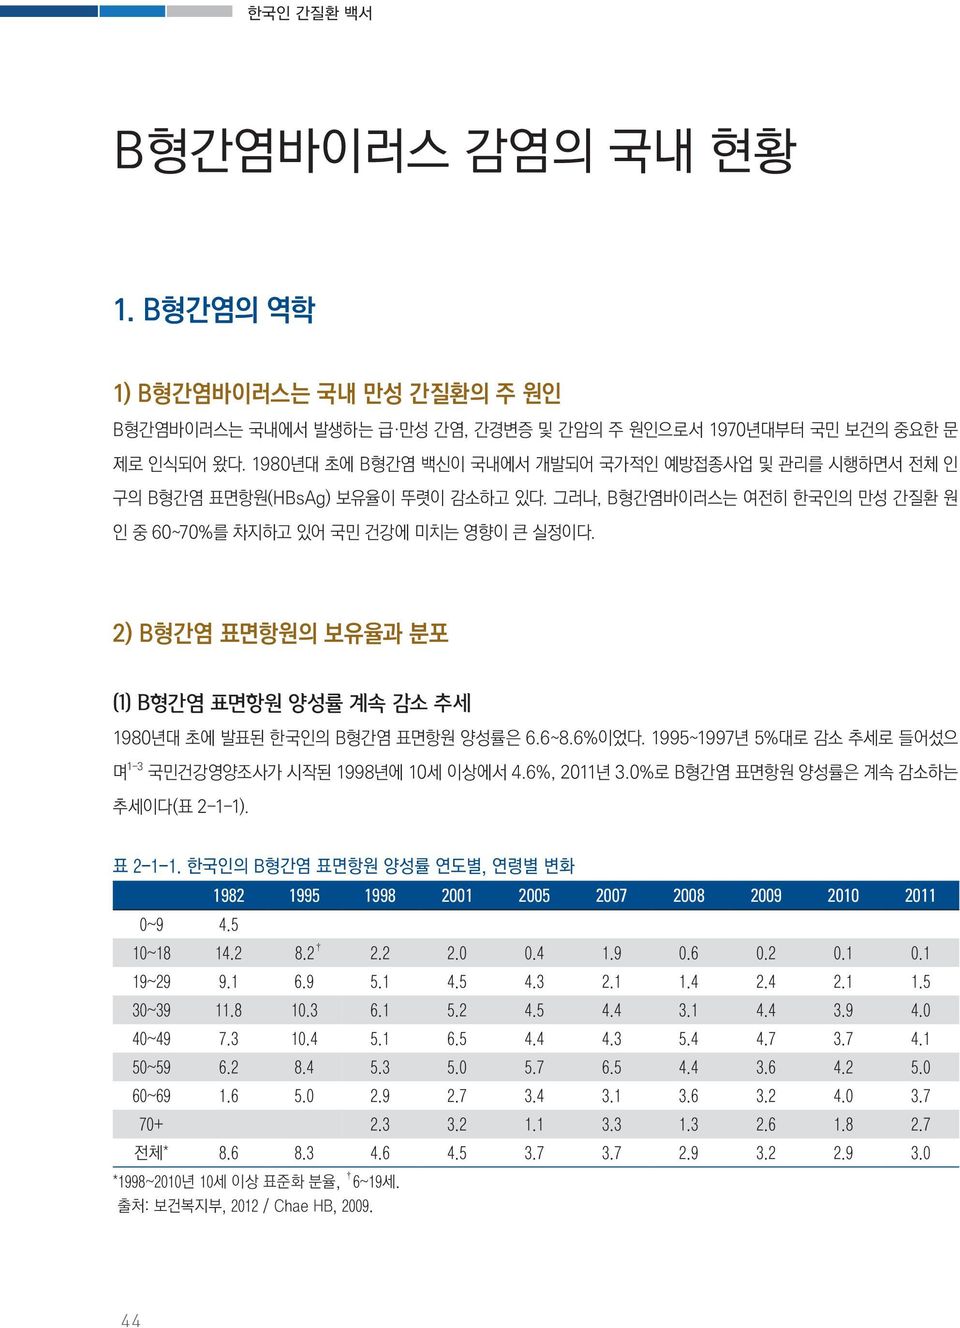 2) B형간염 표면항원의 보유율과 분포 (1) B형간염 표면항원 양성률 계속 감소 추세 1980년대 초에 발표된 한국인의 B형간염 표면항원 양성률은 6.6~8.6%이었다. 1995~1997년 5%대로 감소 추세로 들어섰으 며 1-3 국민건강영양조사가 시작된 1998년에 10세 이상에서 4.6%, 2011년 3.